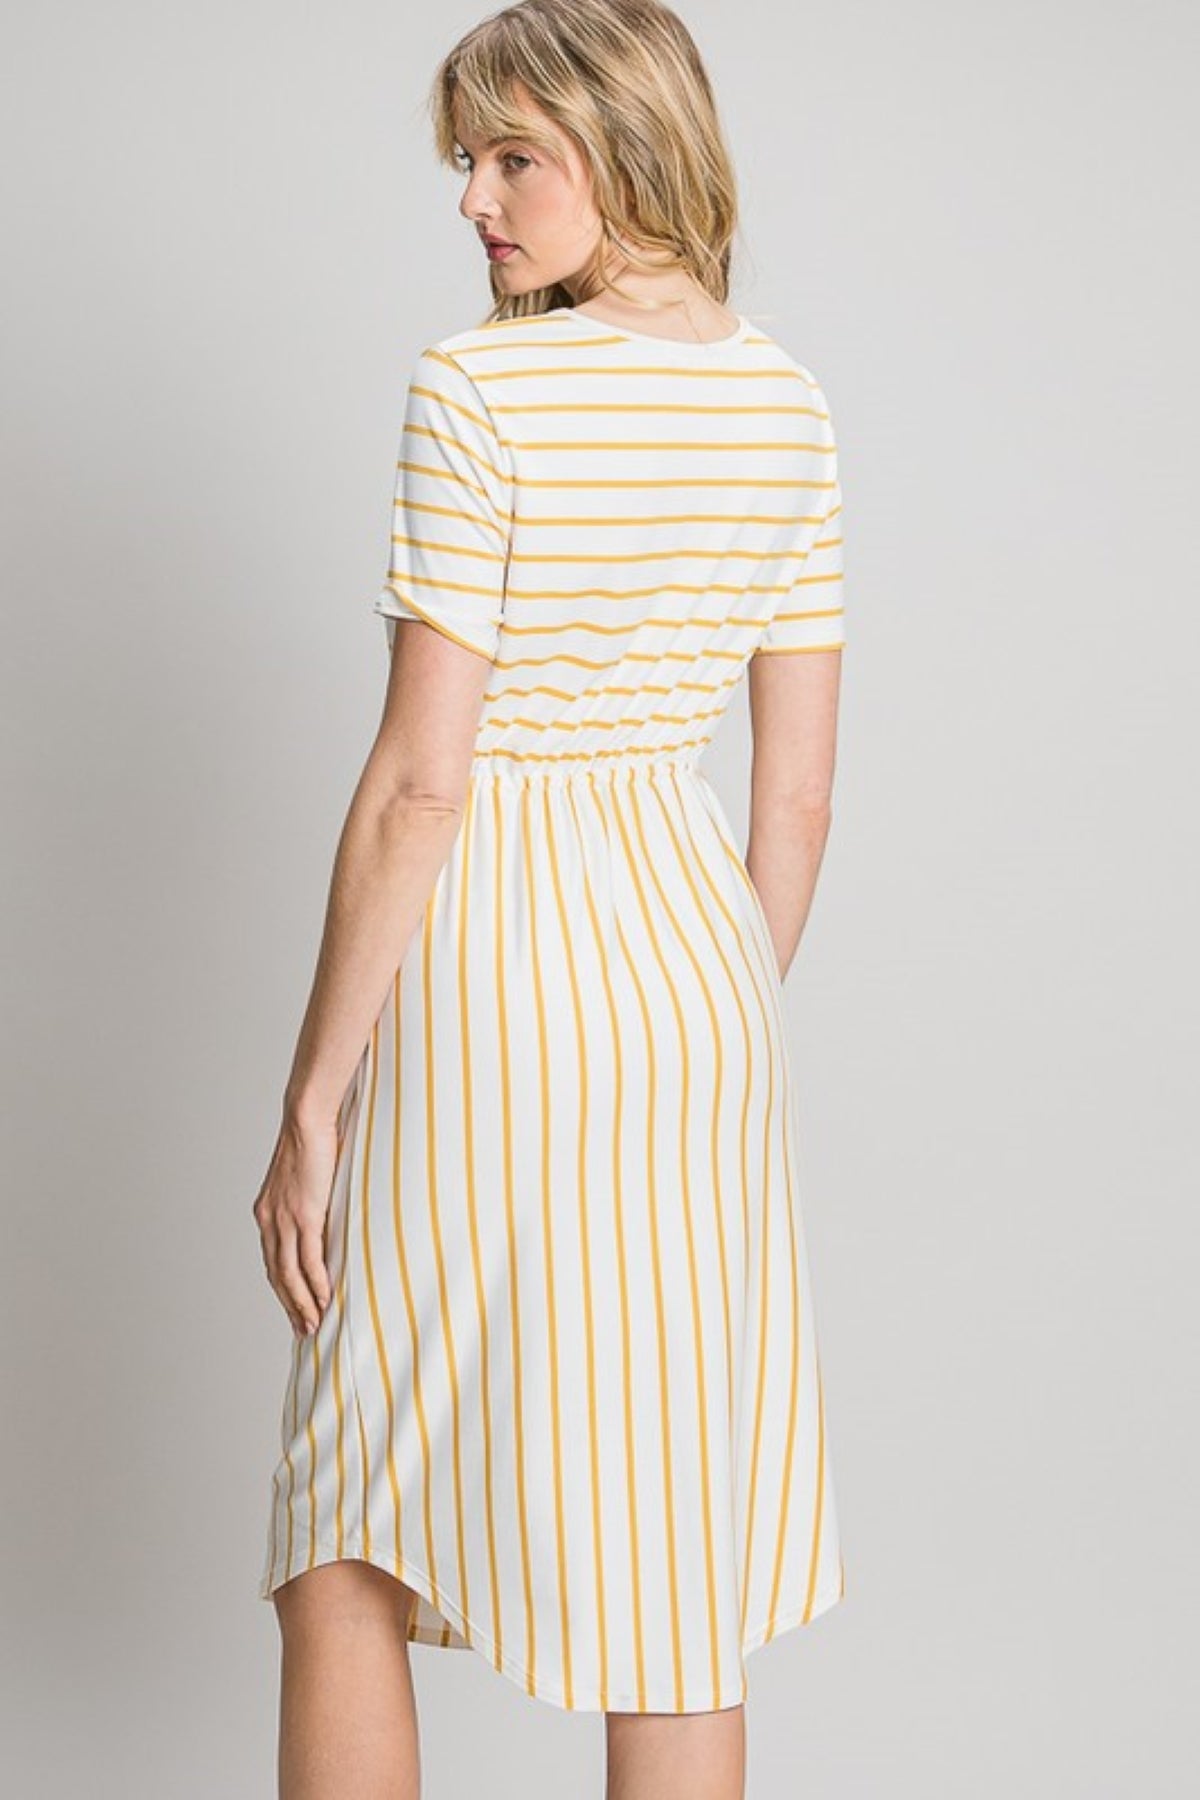 Tammie Striped Midi Dress in Mustard